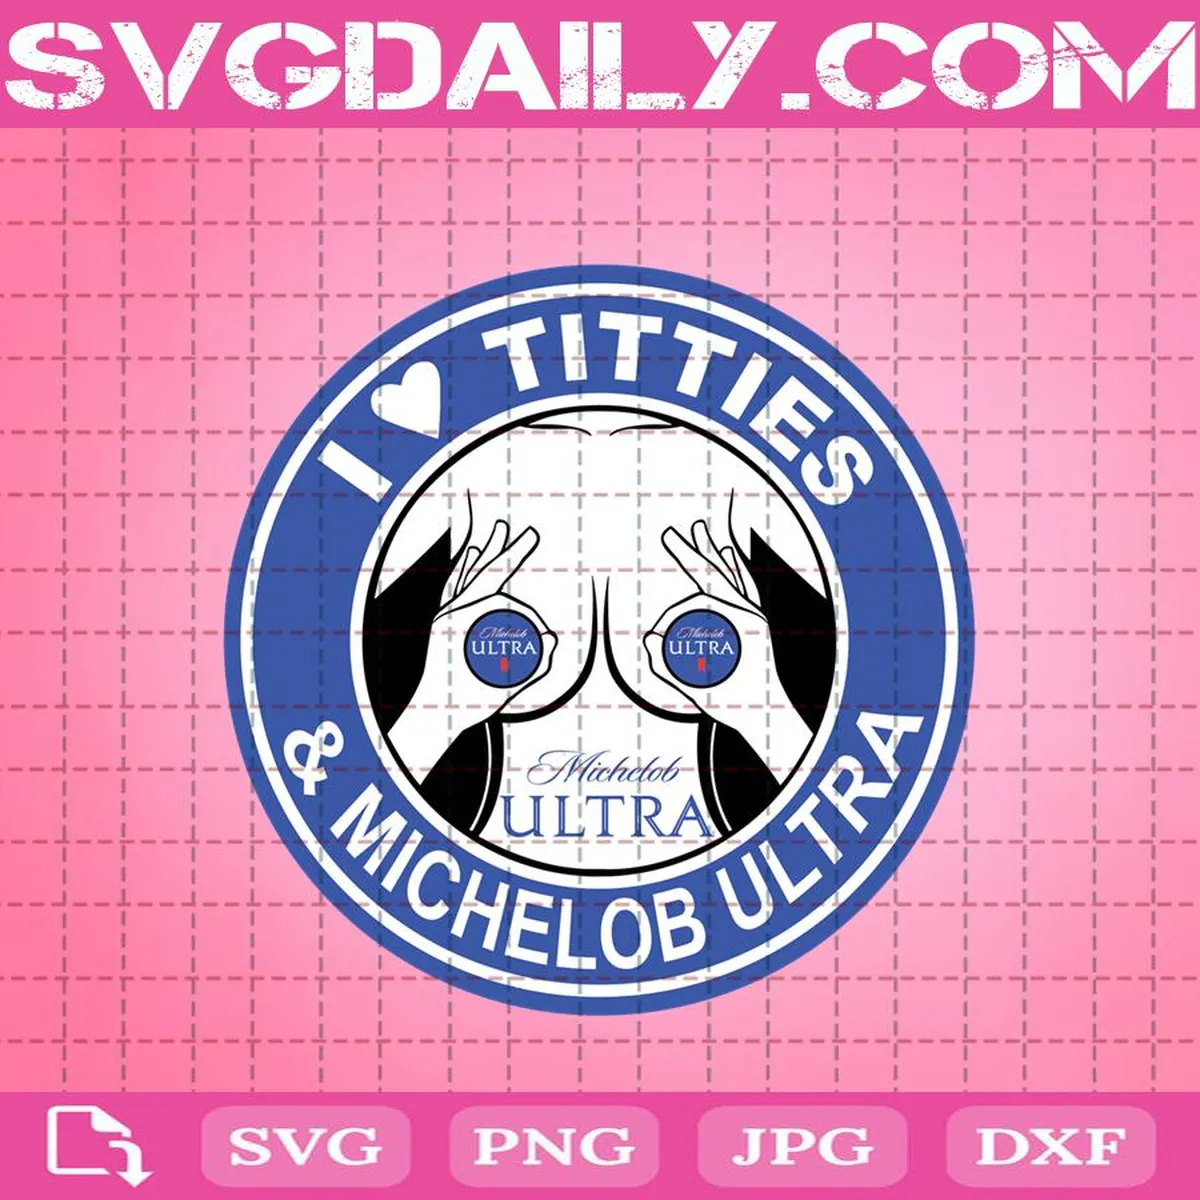 I Love Titties & Michelob Ultra Svg, I Love Titties Svg, Michelob Ultra Svg, Love Titties Svg, Titties & Michelob Ultra Svg